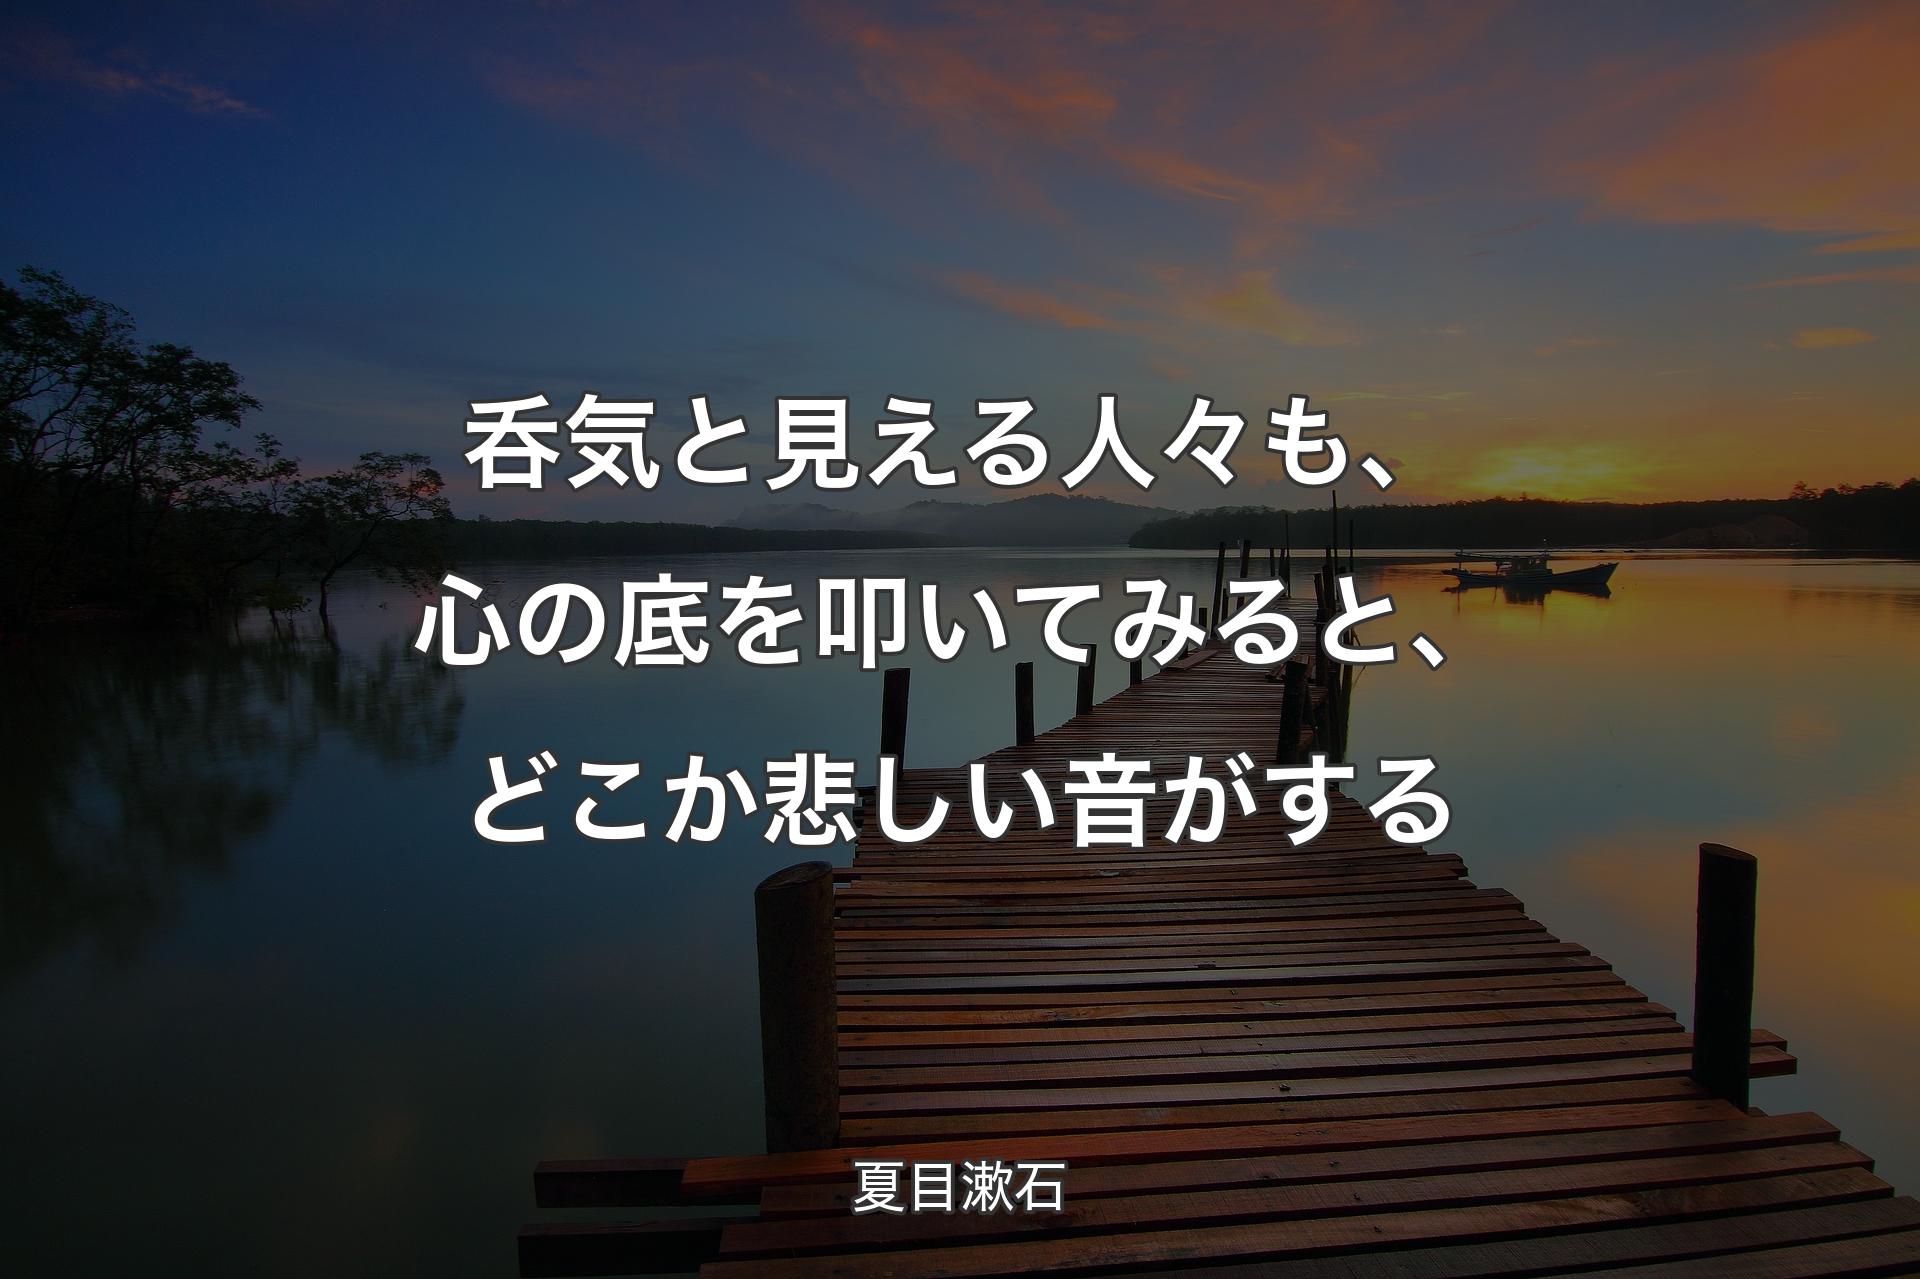 【背景3】呑気と見える人々も、心の底を叩いてみると、どこか悲しい音がする - 夏目漱石